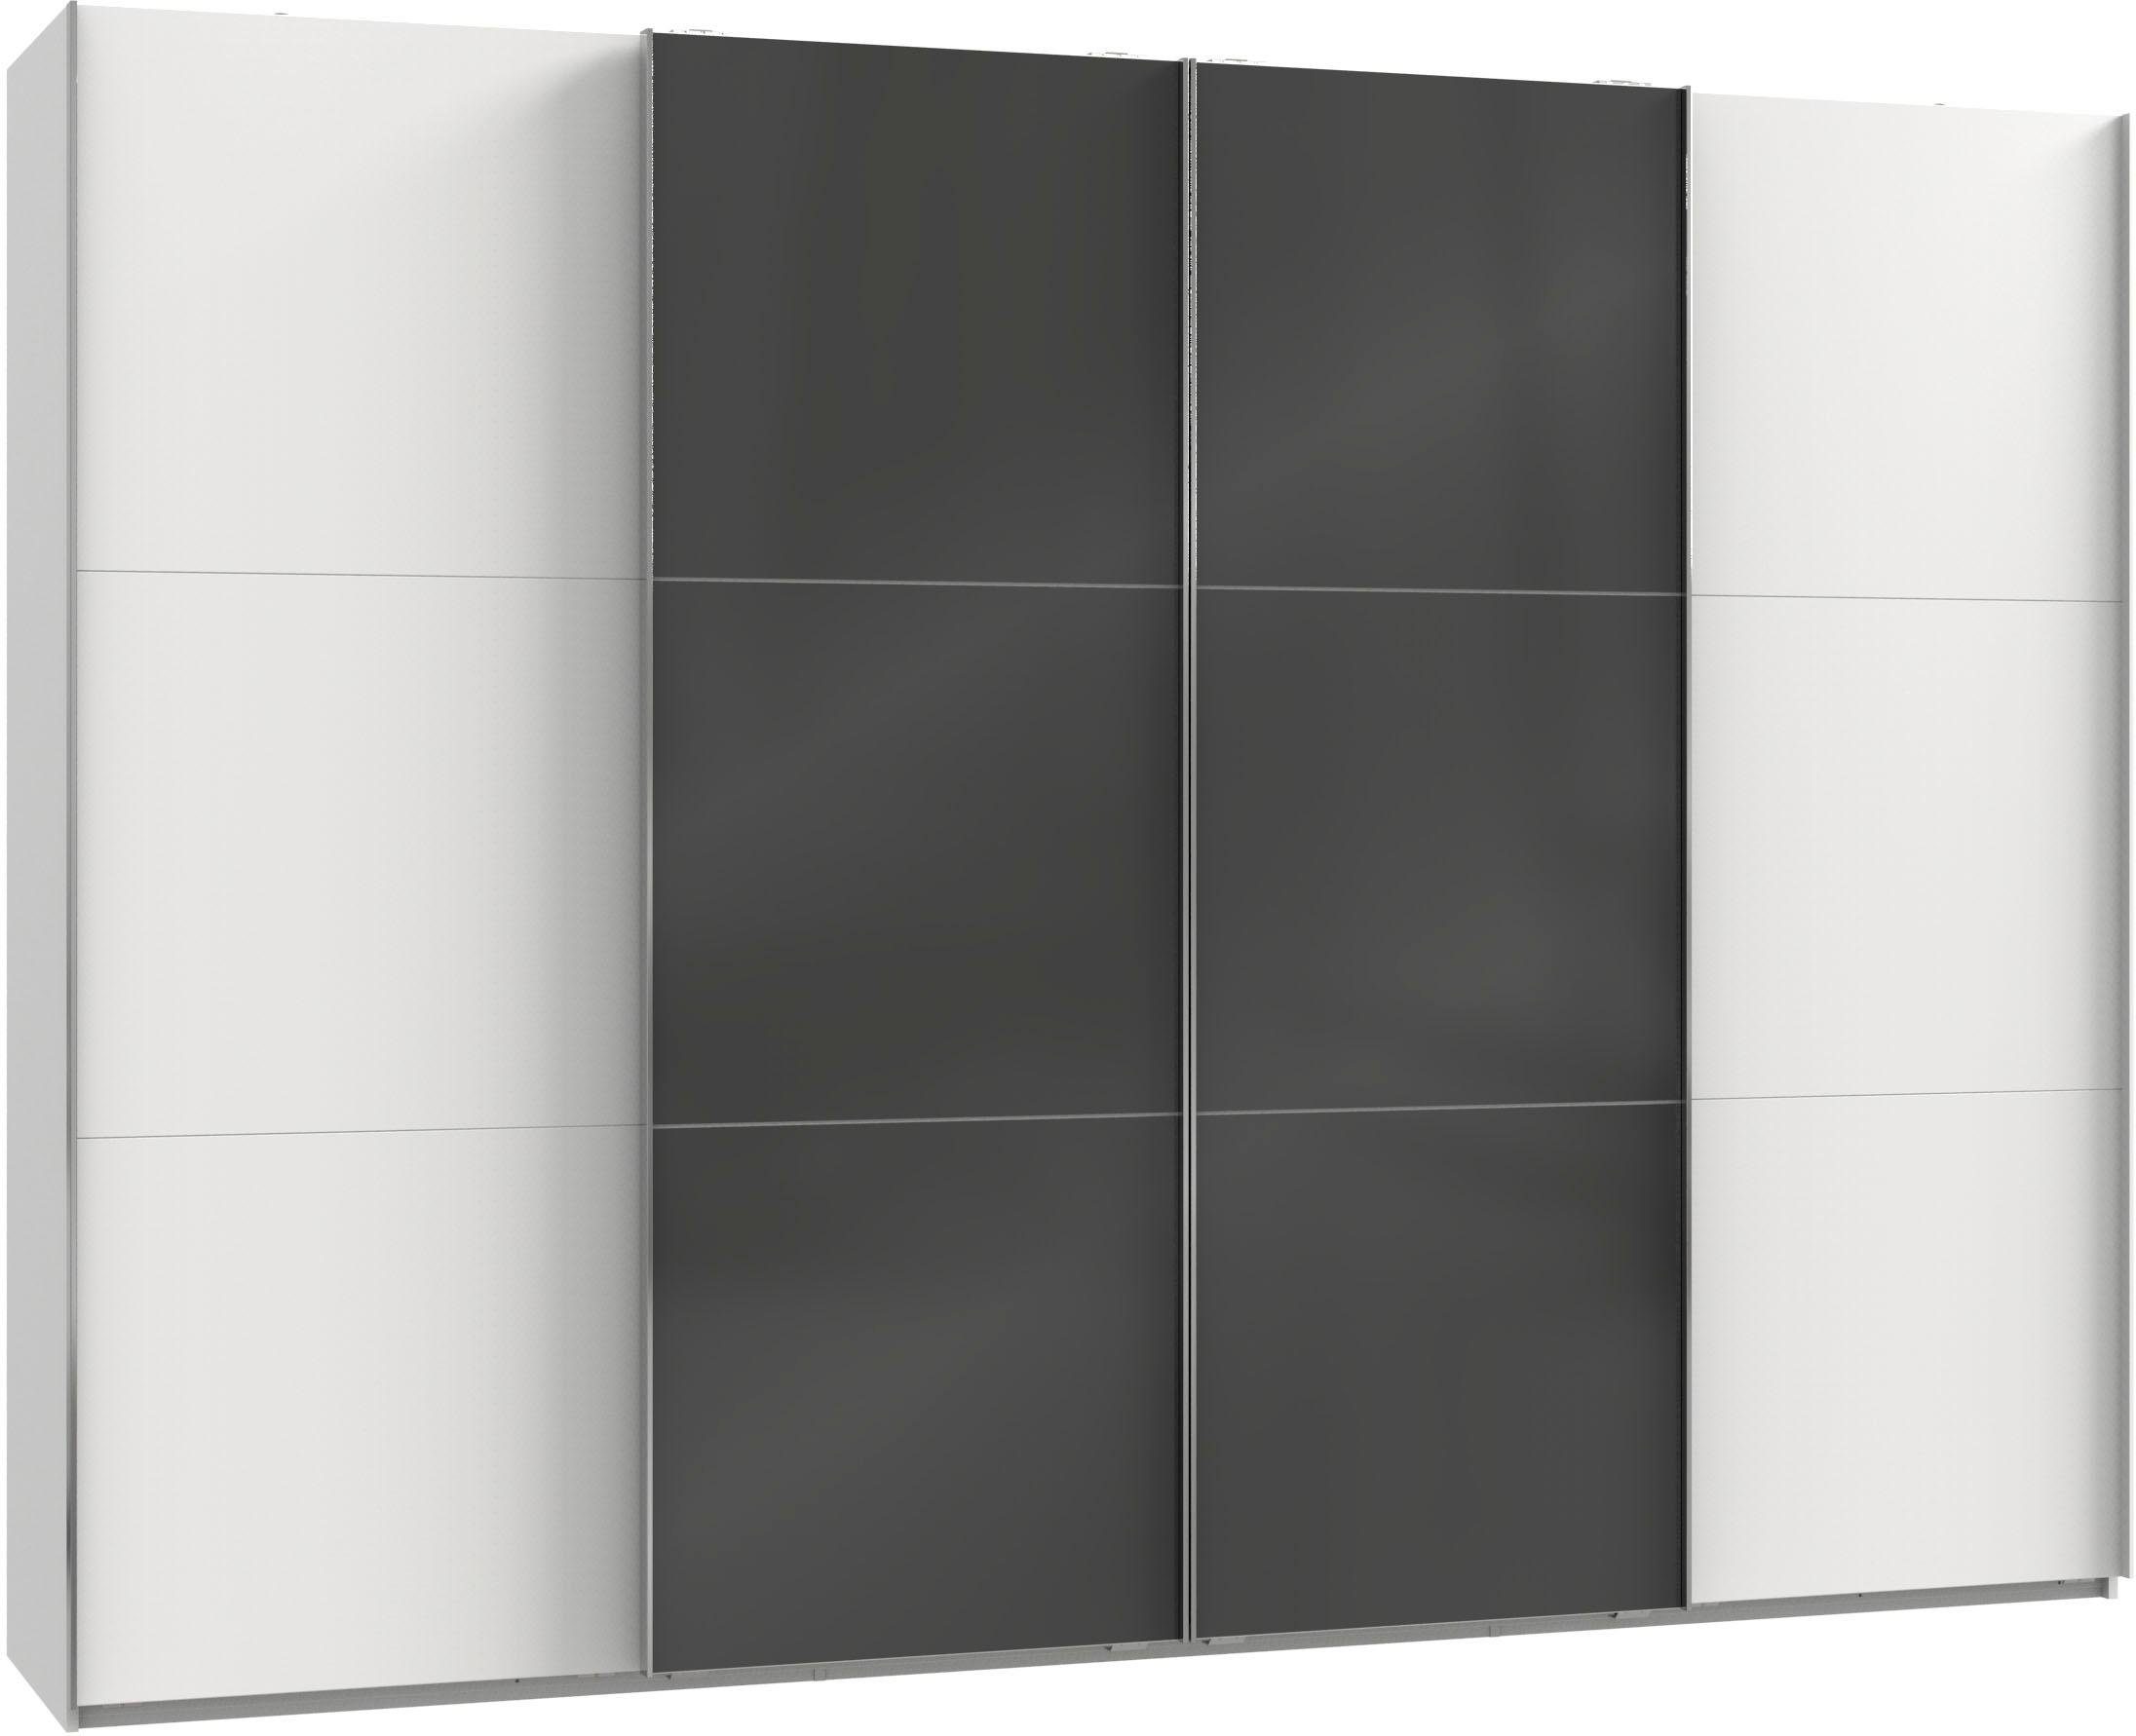 wimex zweefdeurkast niveau met glazen deuren en synchroon openen wit